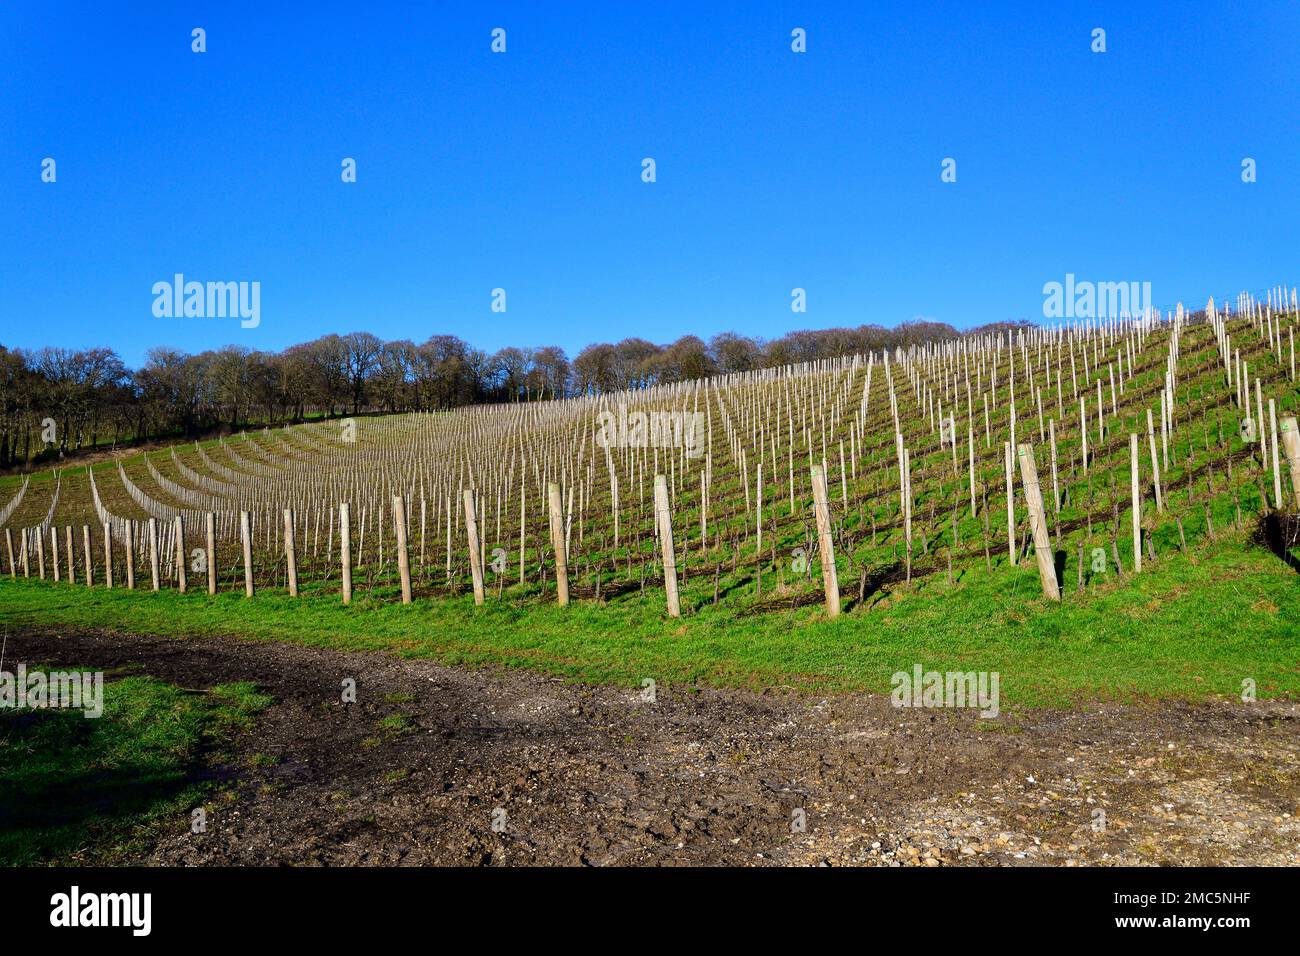 Vitigni che crescono sui pendii di gesso della Stonor Valley per produrre vino frizzante presso la Hundred Hills Winery, la Stonor Valley, Oxfordshire, Inghilterra, Regno Unito Foto Stock